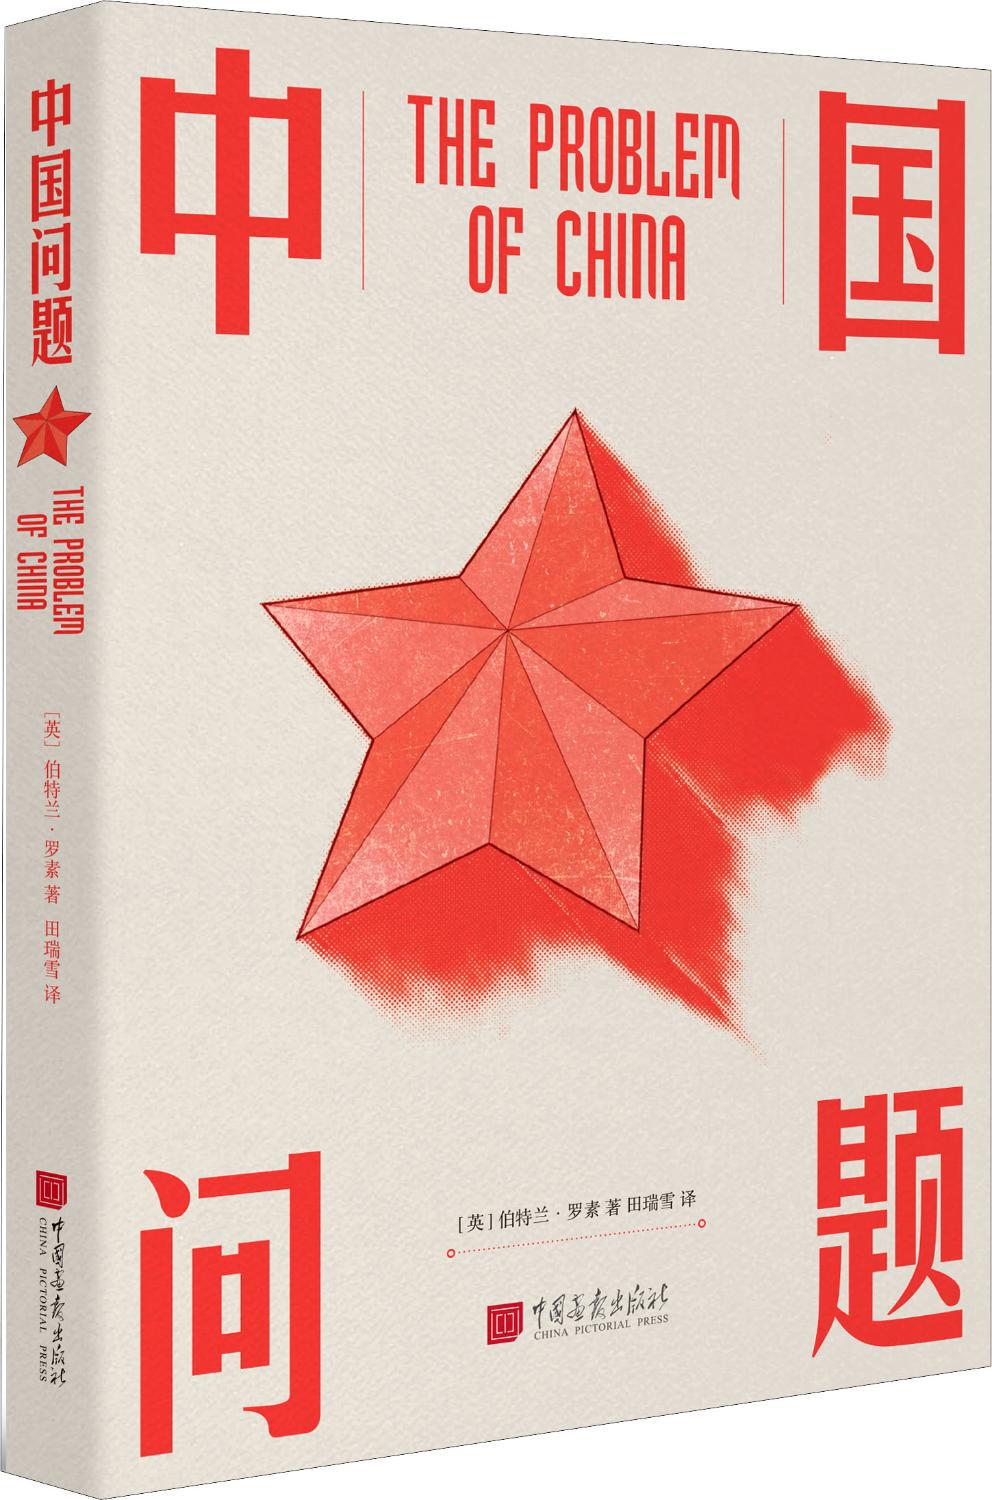 中国问题 政治理论 中国画报出版社